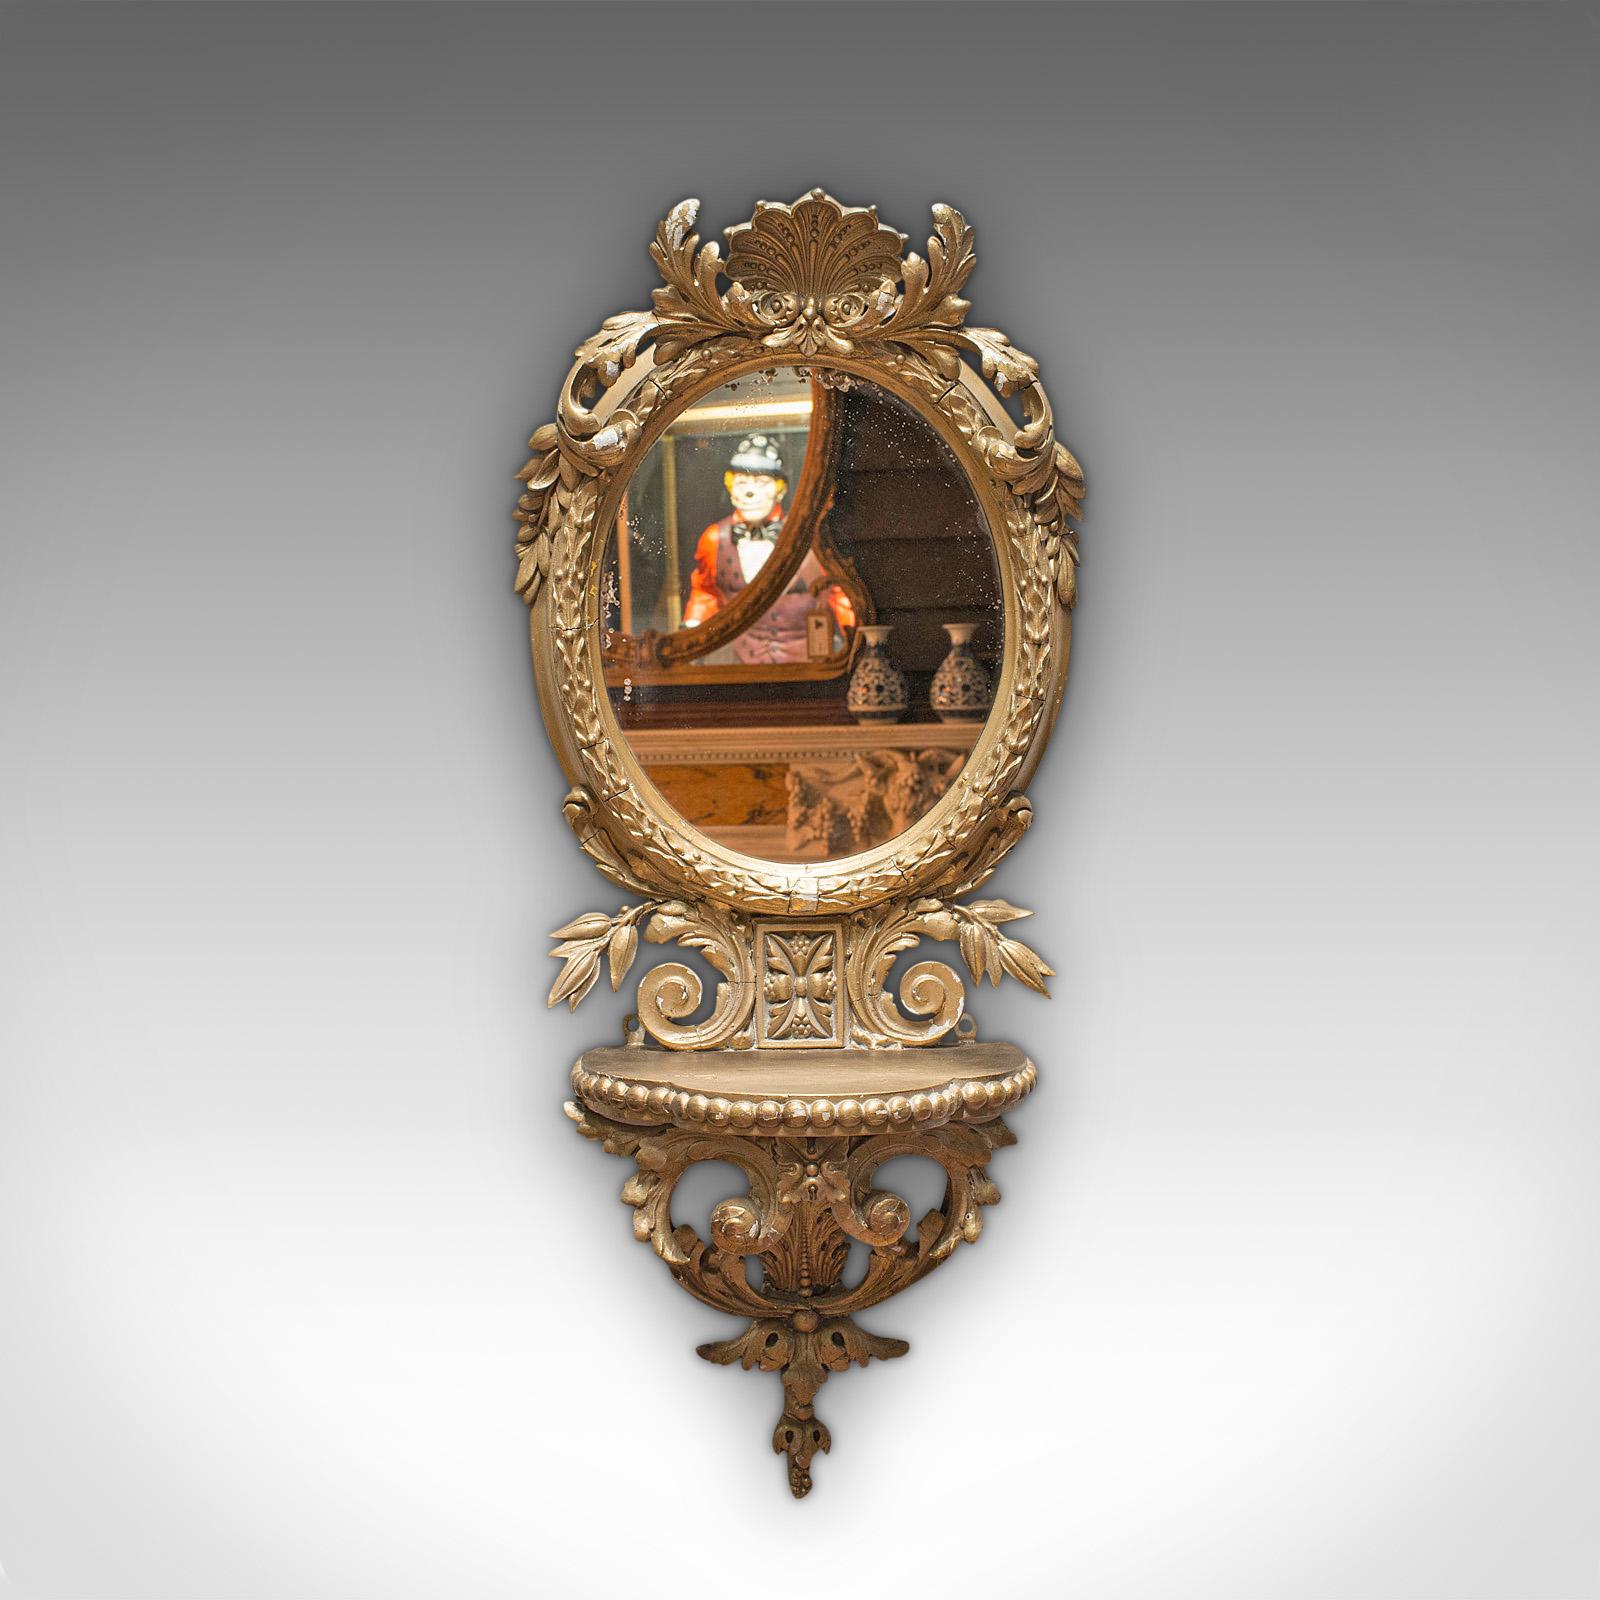 Il s'agit d'un miroir mural ancien. Miroir ovale français en gesso doré avec cadre orné, datant du début de la période victorienne, vers 1850.

Superbes détails et teintes attrayantes
Affichant une patine vieillie souhaitable
Le gesso doré